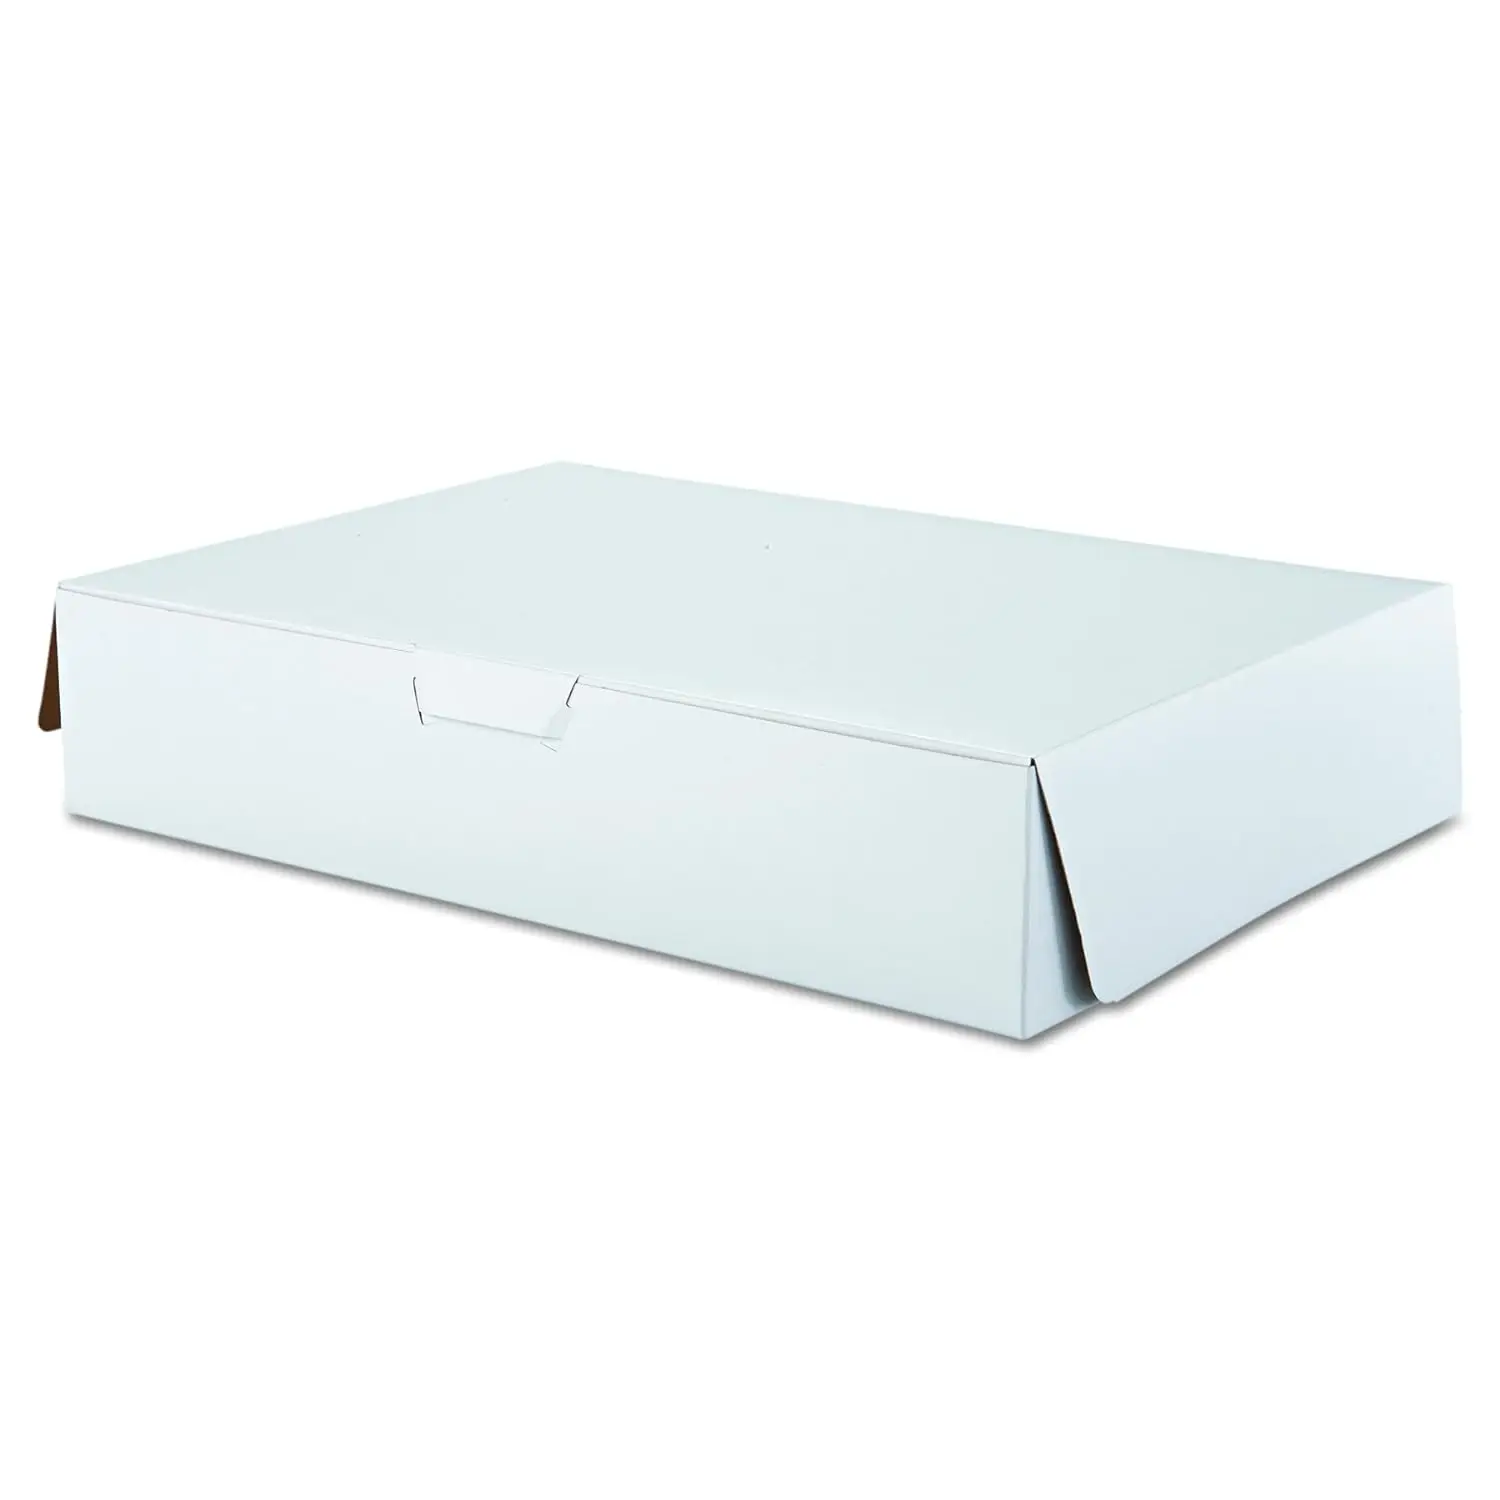 

Крафт-картон с покрытием из глины премиум-класса, белый лист без окон для торта и хозяйственных принадлежностей, клей для ногтей 19 дюймов в длину x 14 дюймов в ширину x 4 дюйма в высоту